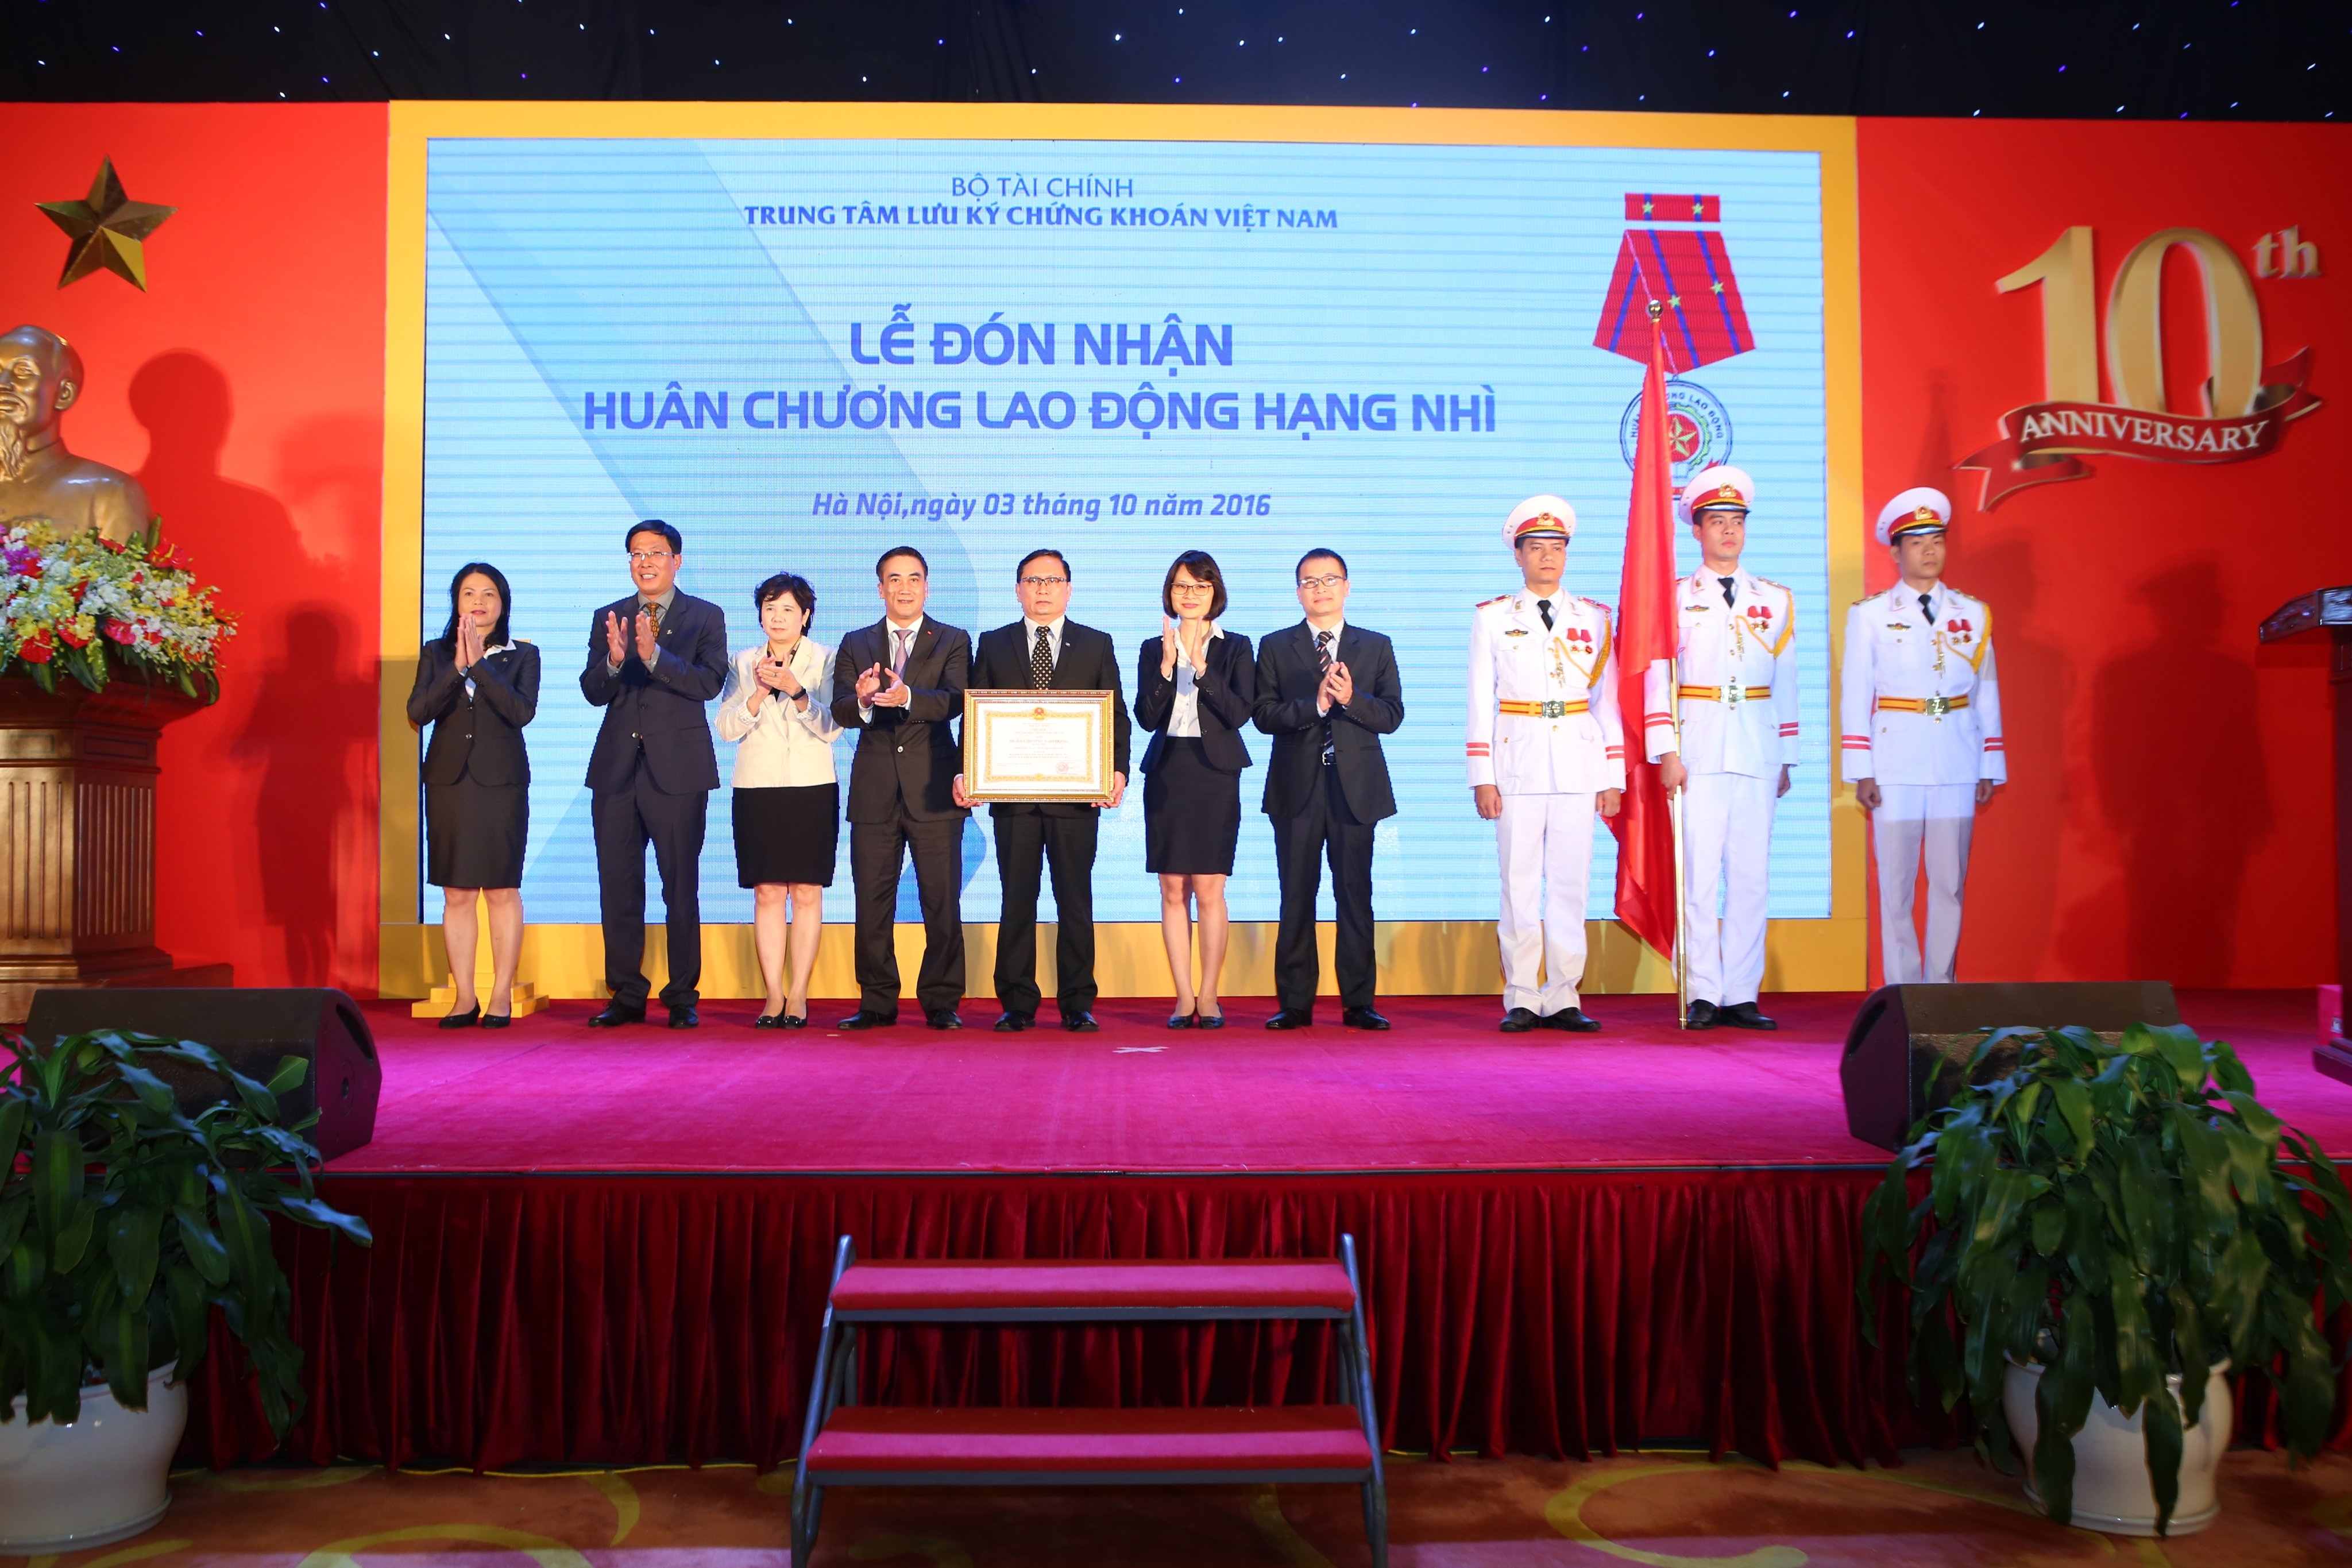 Dấu chân bền bỉ của VSD trên hành trình 25 năm xây dựng TTCK Việt Nam